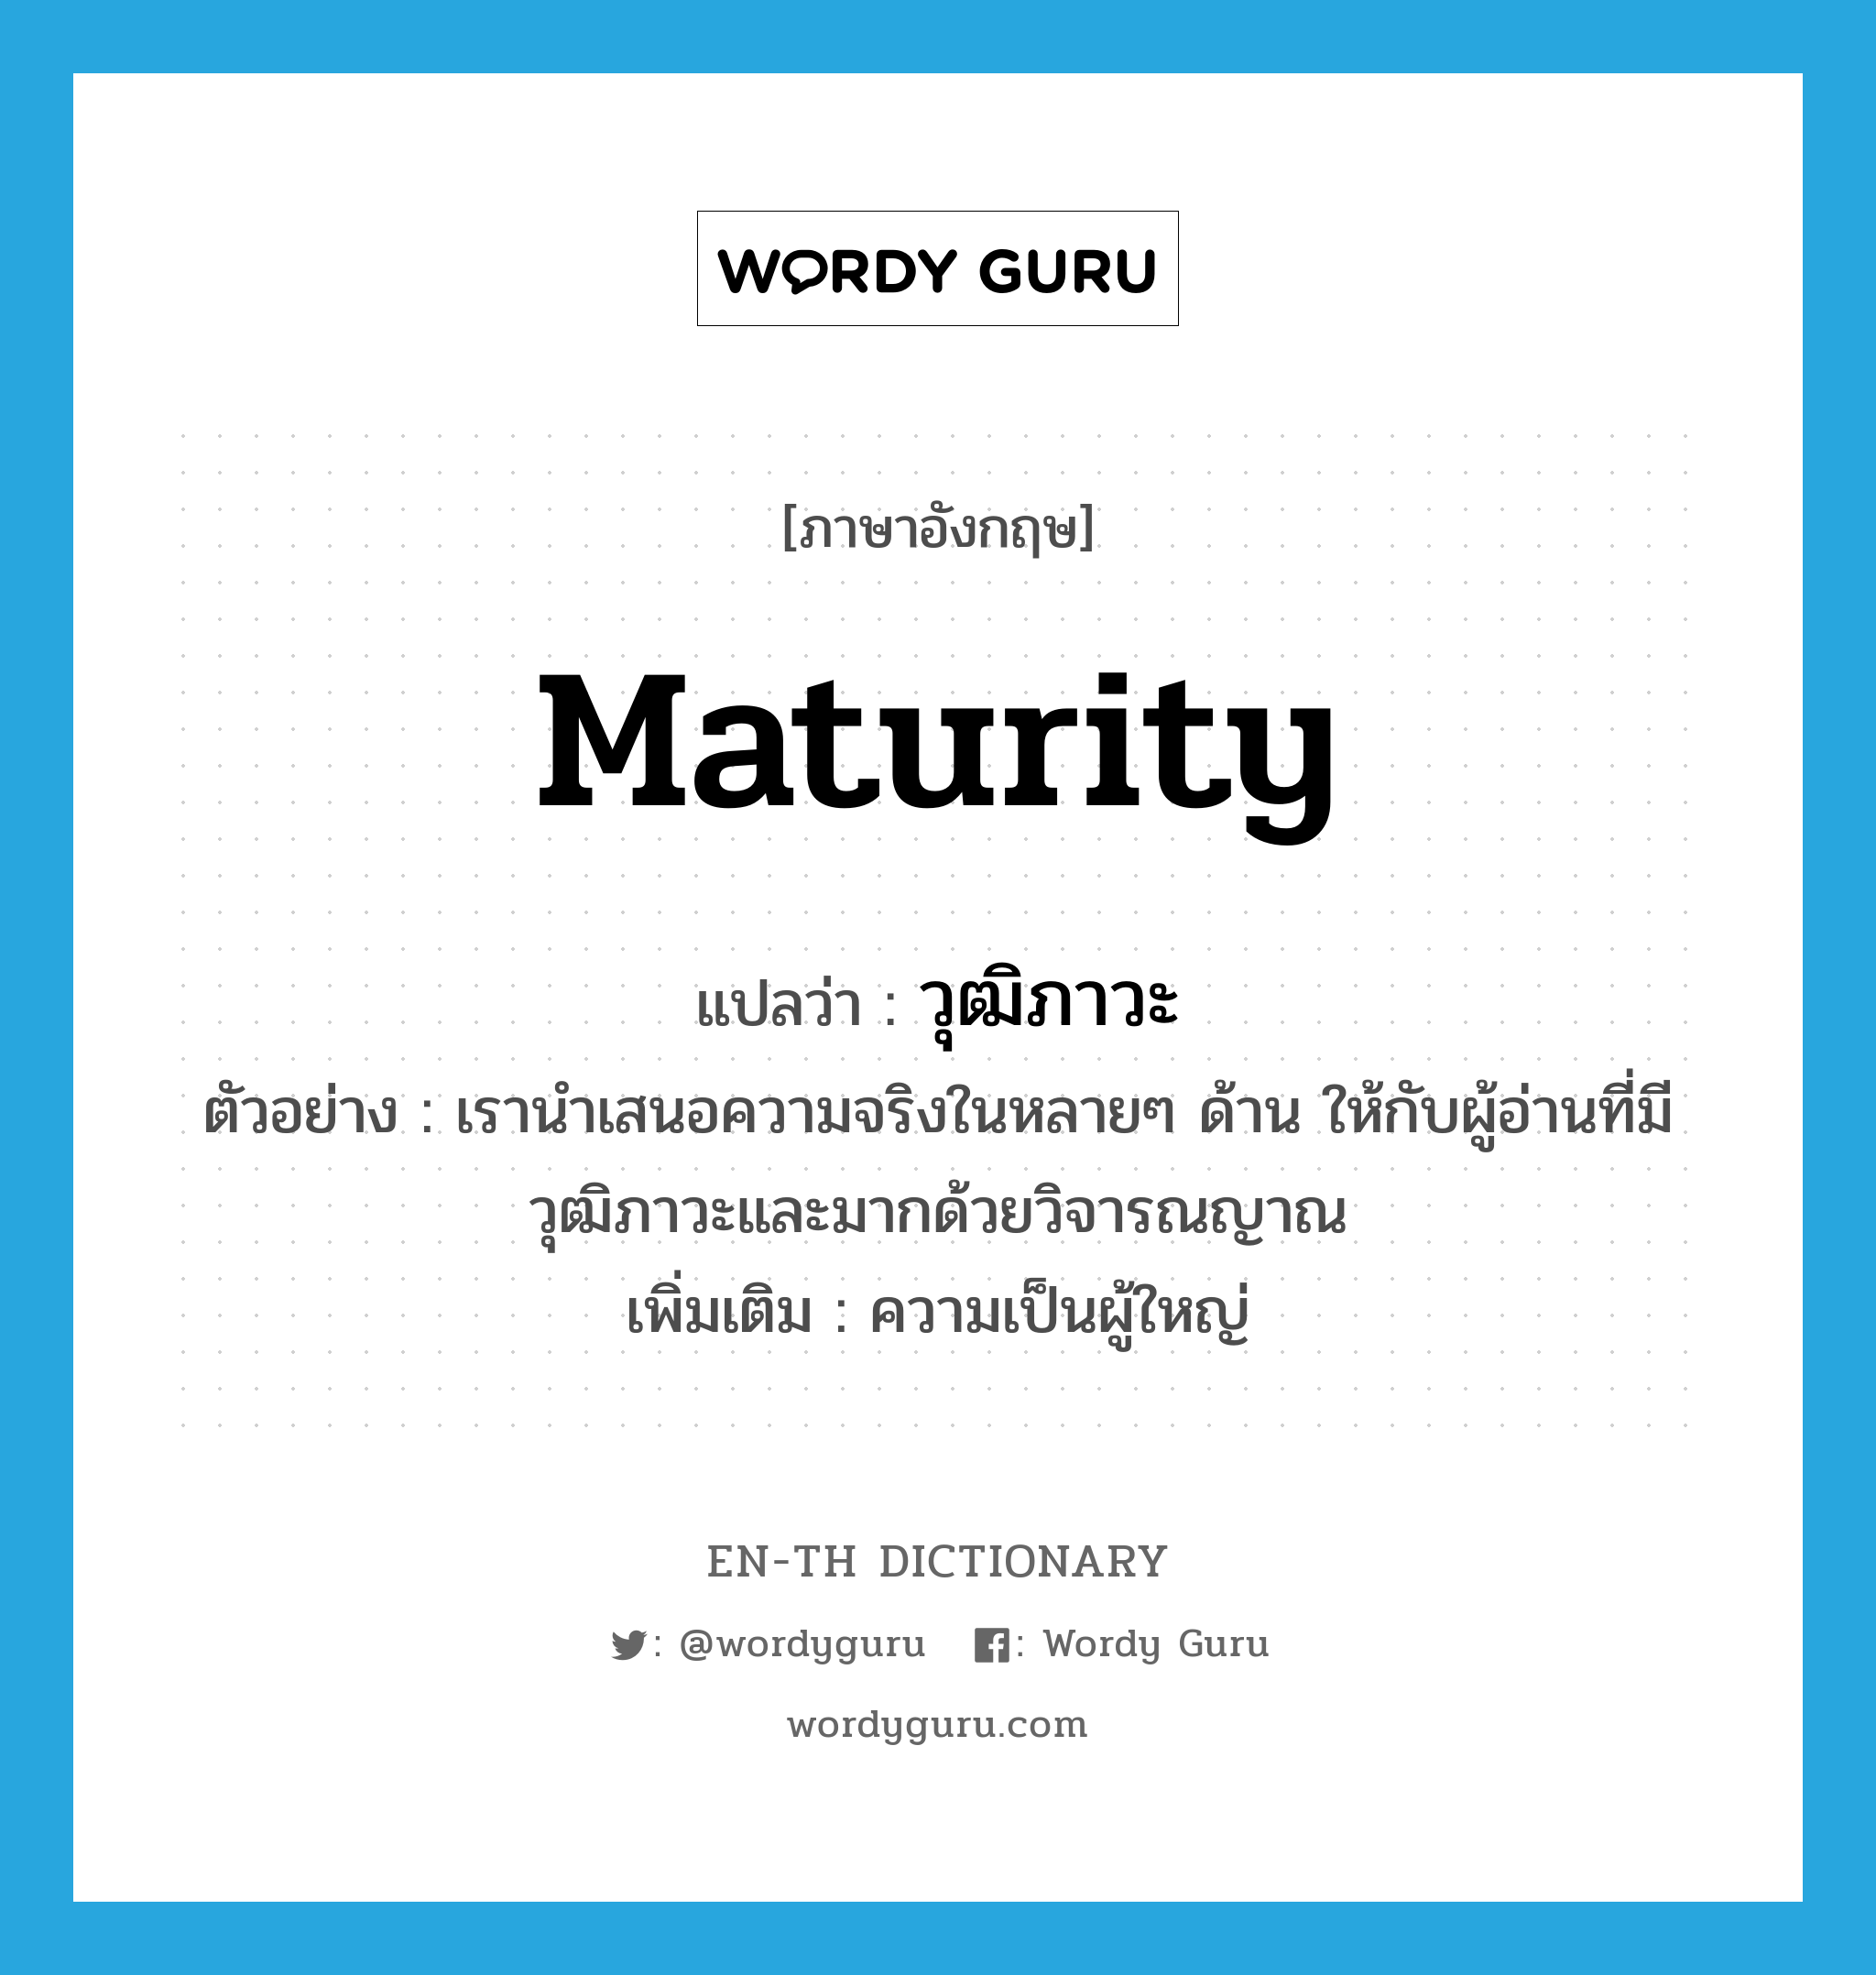 maturity แปลว่า?, คำศัพท์ภาษาอังกฤษ maturity แปลว่า วุฒิภาวะ ประเภท N ตัวอย่าง เรานำเสนอความจริงในหลายๆ ด้าน ให้กับผู้อ่านที่มีวุฒิภาวะและมากด้วยวิจารณญาณ เพิ่มเติม ความเป็นผู้ใหญ่ หมวด N